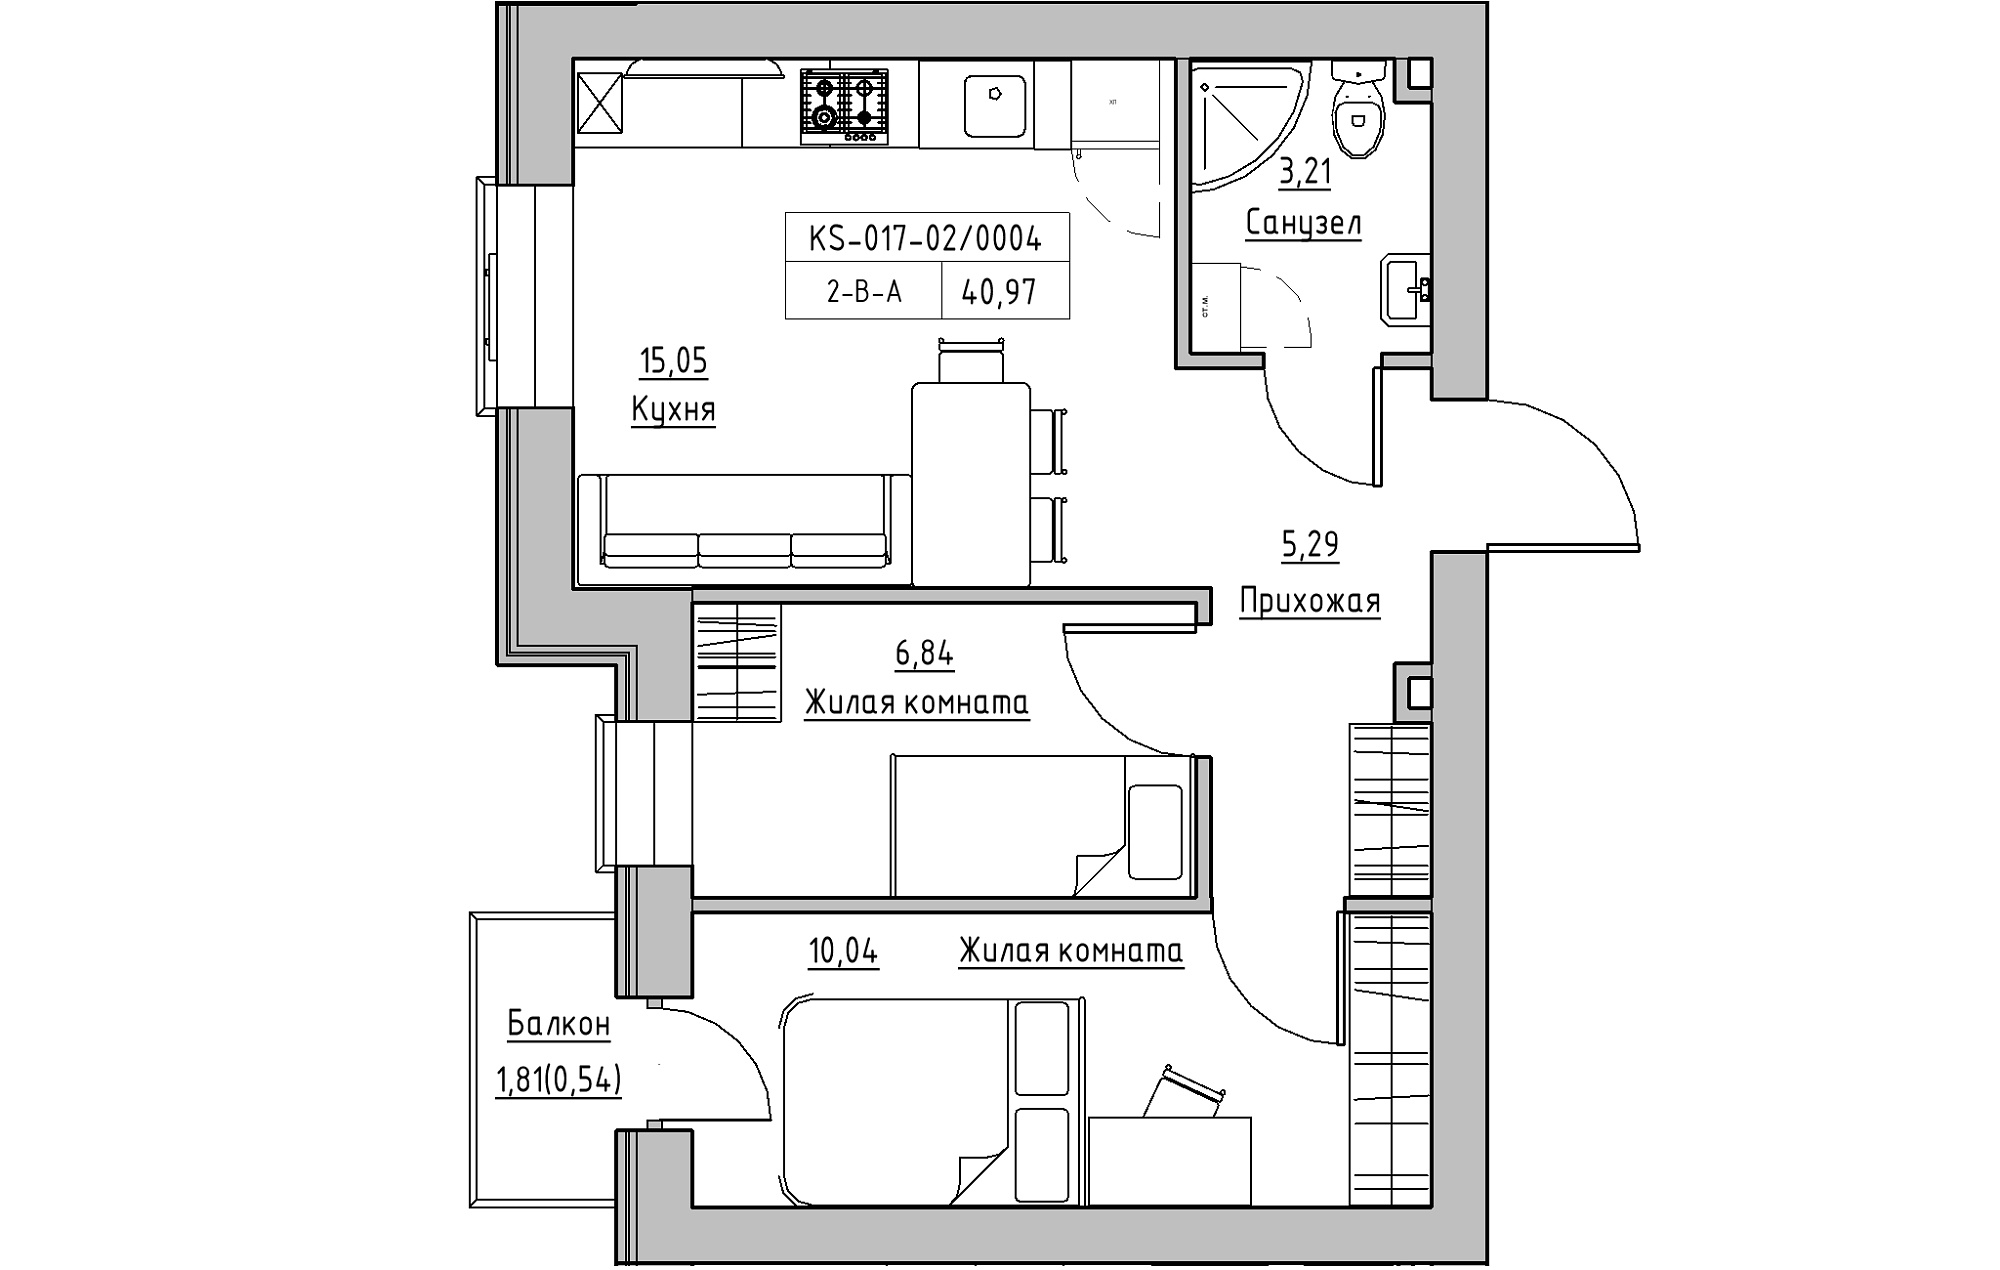 Планировка 2-к квартира площей 40.97м2, KS-017-02/0004.